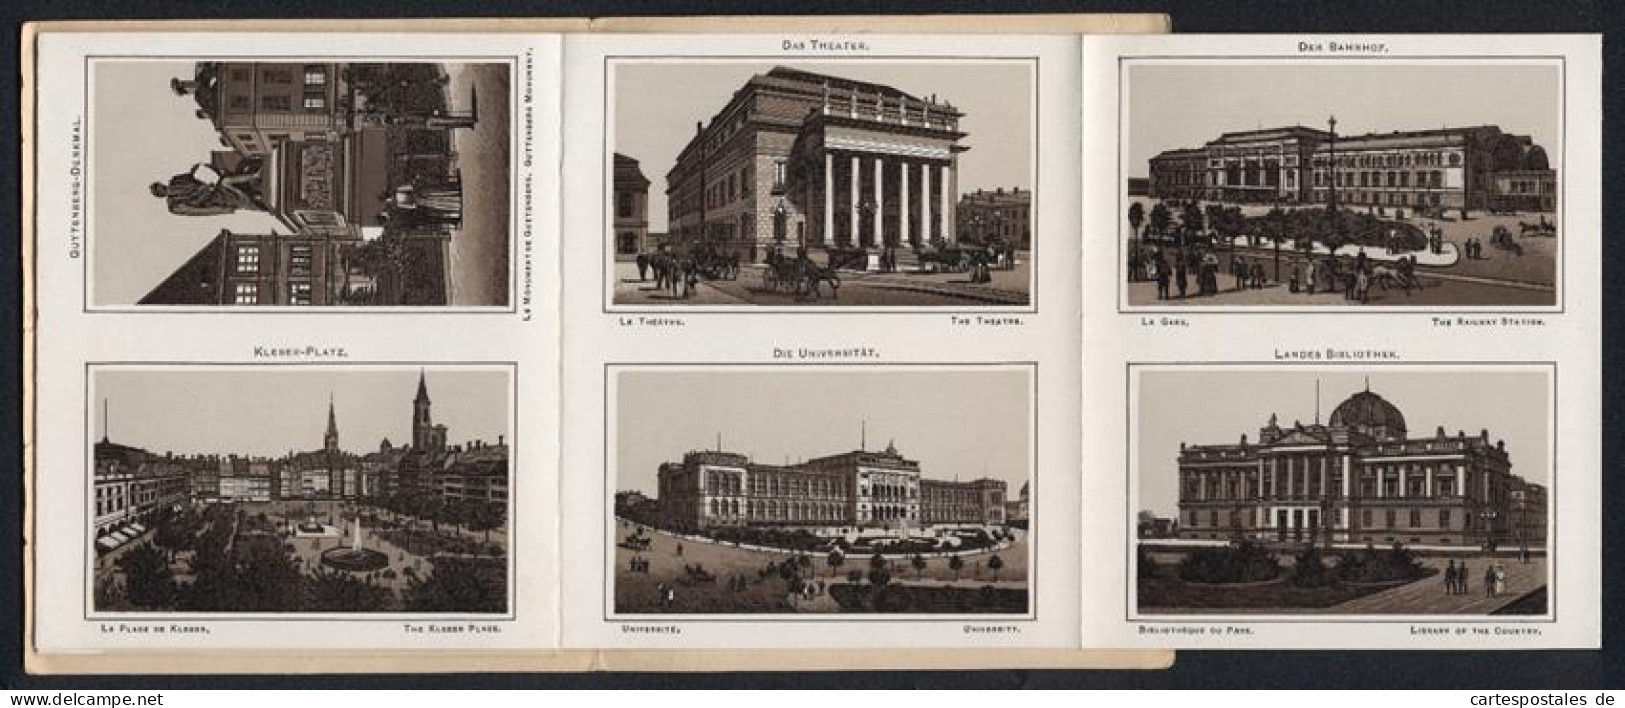 Leporello-Album 24 Lithographie-Ansichten Strassburg I. E., Bahnhof, Landesausschuss-Gebäude, Frauenhaus, Kleber-Platz  - Lithographies